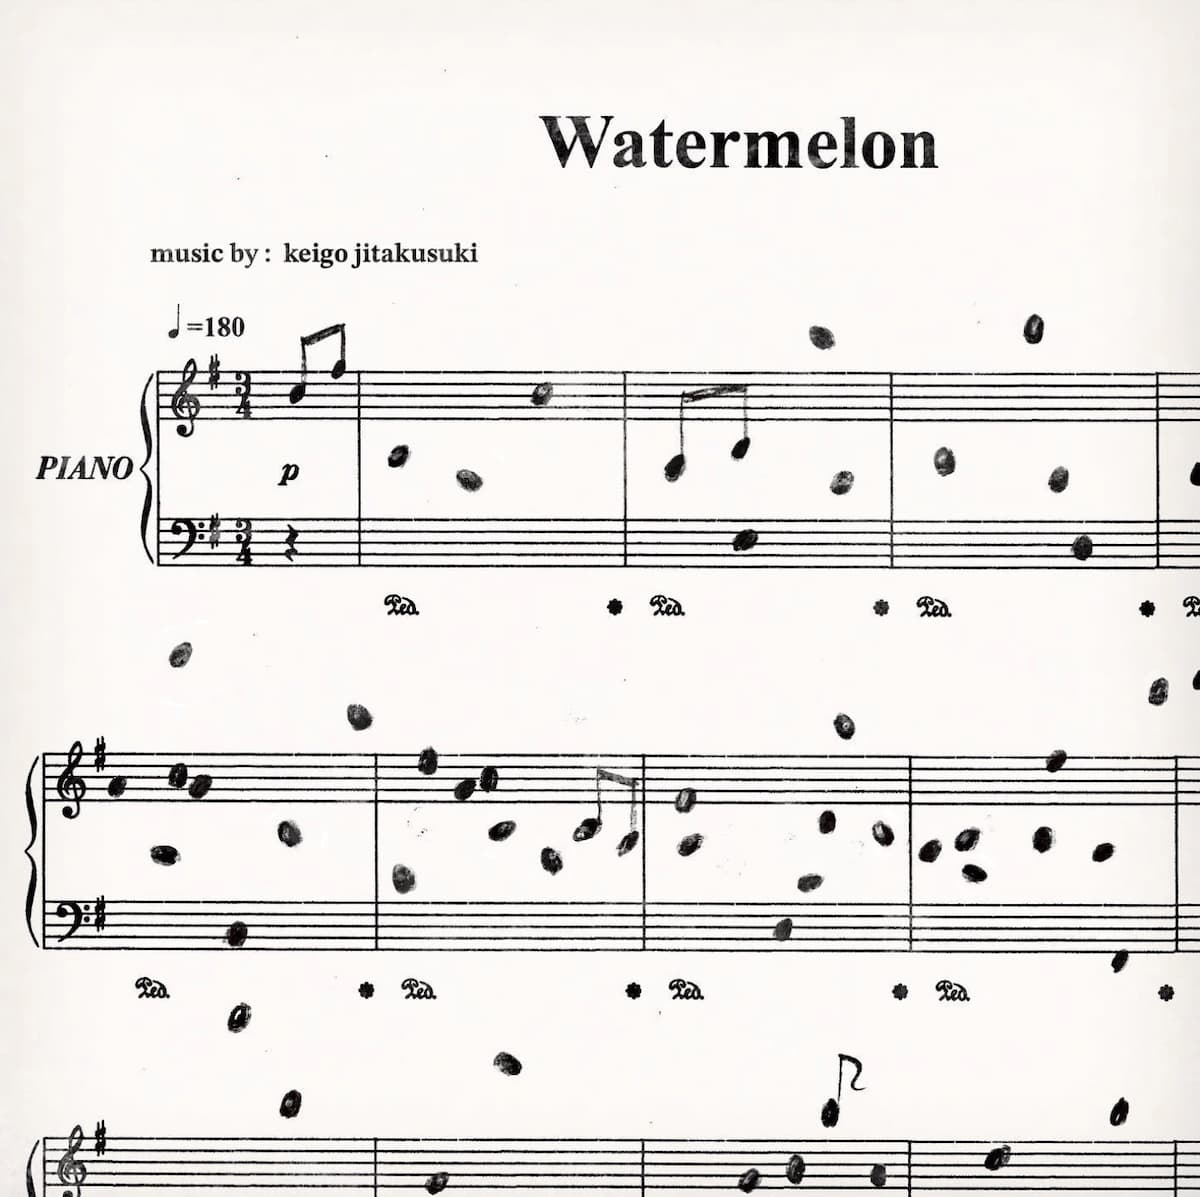 New Piano Composition: Watermelon